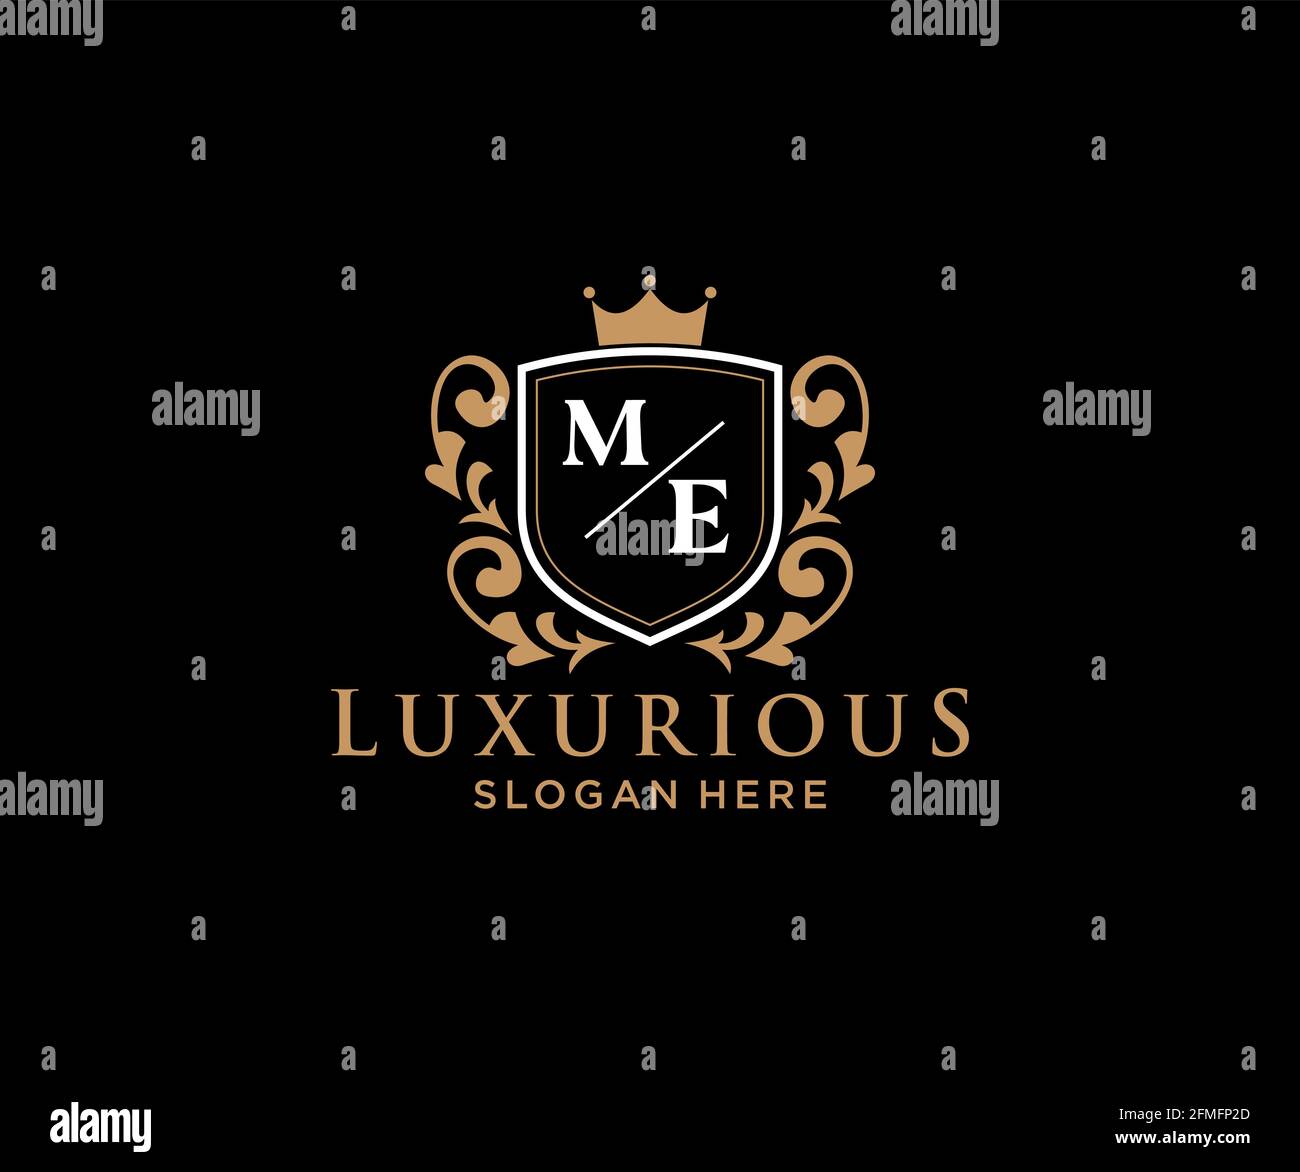 ME Letter Royal Luxury Logo Vorlage in Vektorgrafik für Restaurant, Royalty, Boutique, Cafe, Hotel, Heraldisch, Schmuck, Mode und andere Vektor illustrr Stock Vektor